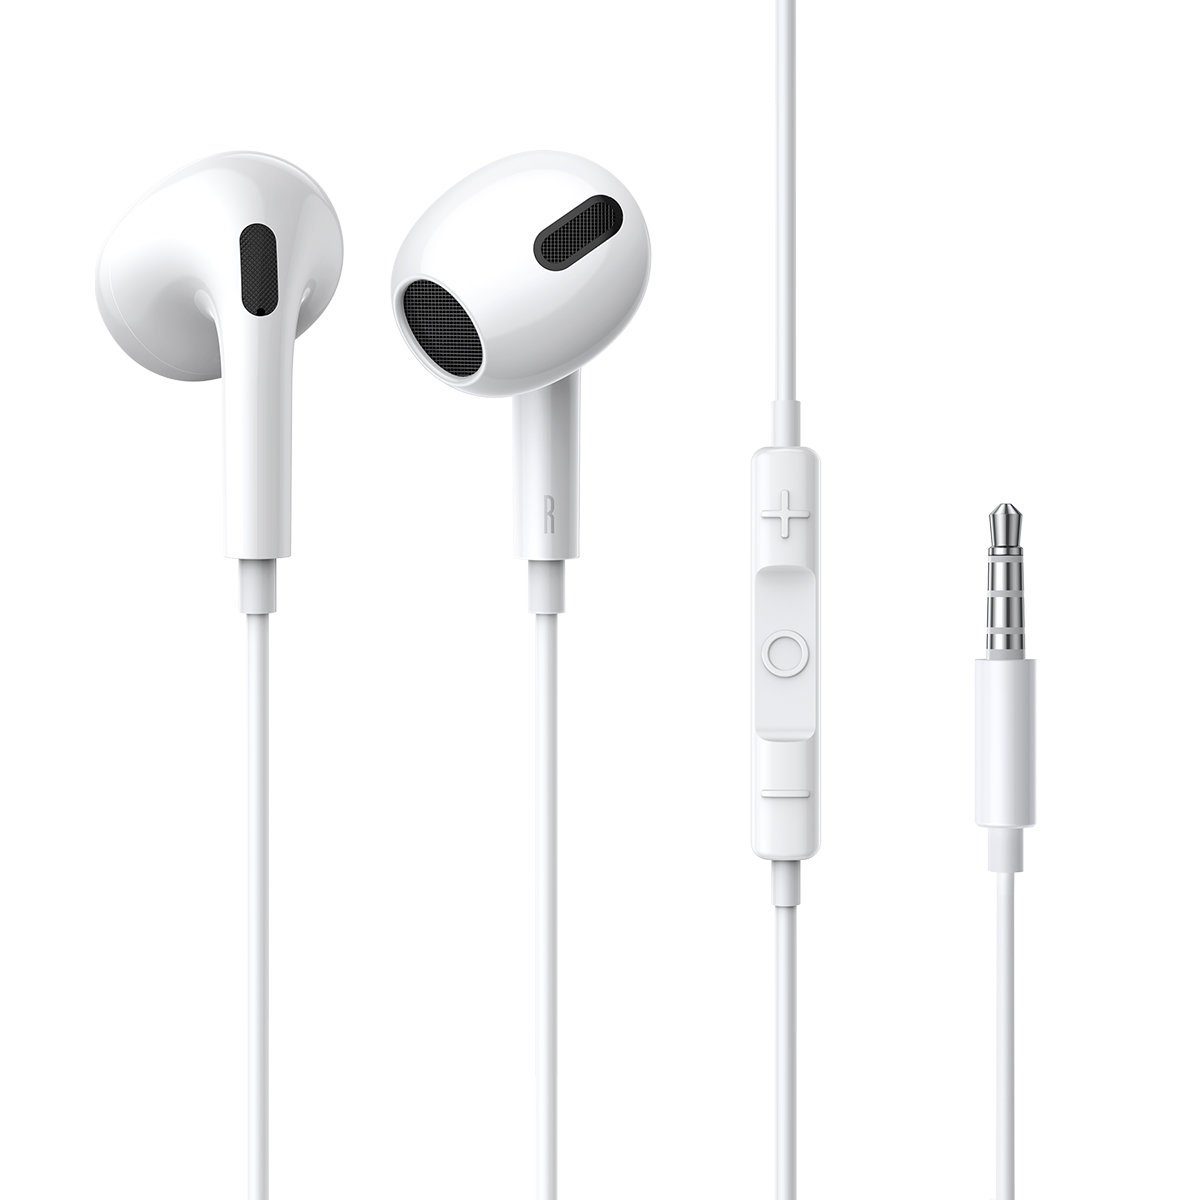 H17 (kabelgebungen, mit kabelgebunden, Kopfhörer, 3,5-mm-Kopfhörer Baseus Ohr und m) 1,1 Kabellänge: weiß Encok passen, schweißbeständig, Kabel, perfekt Wasser- die Miniklinke, On-Ear-Kopfhörer ins